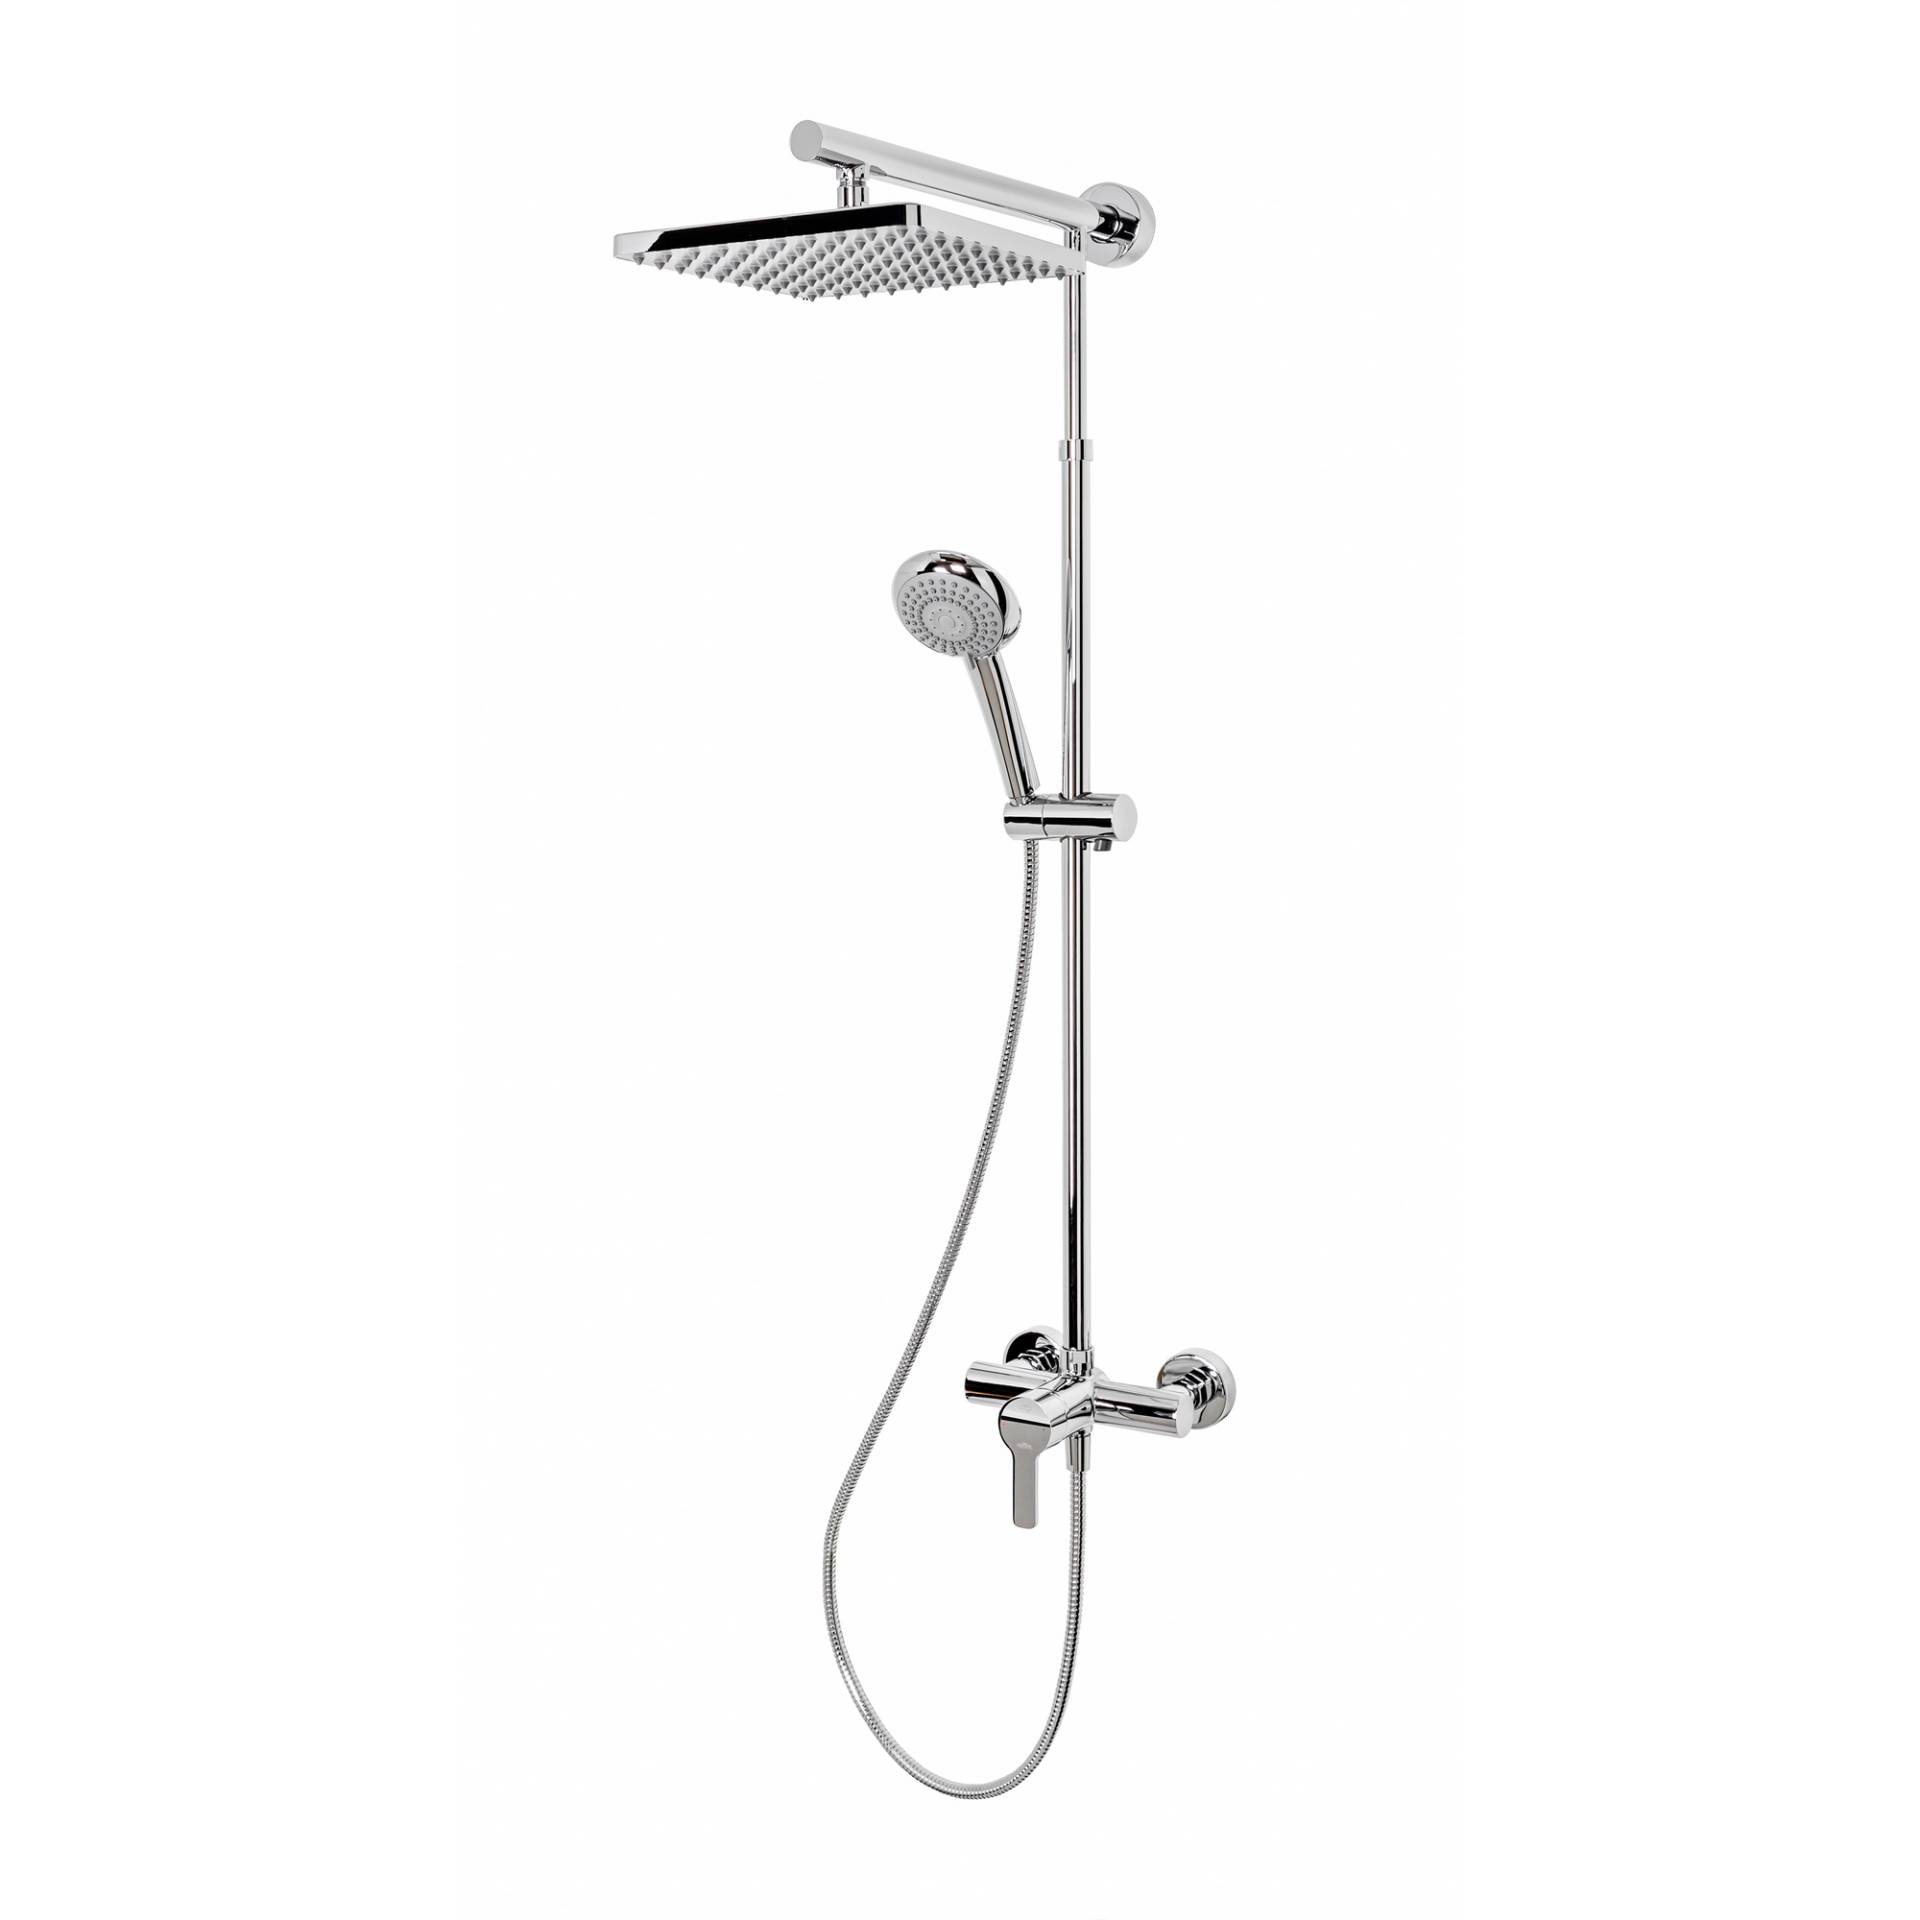 Schulte Duschsystem 'DuschMaster Rain' mit Einhebelmischer, eckig, 155 cm von Schulte